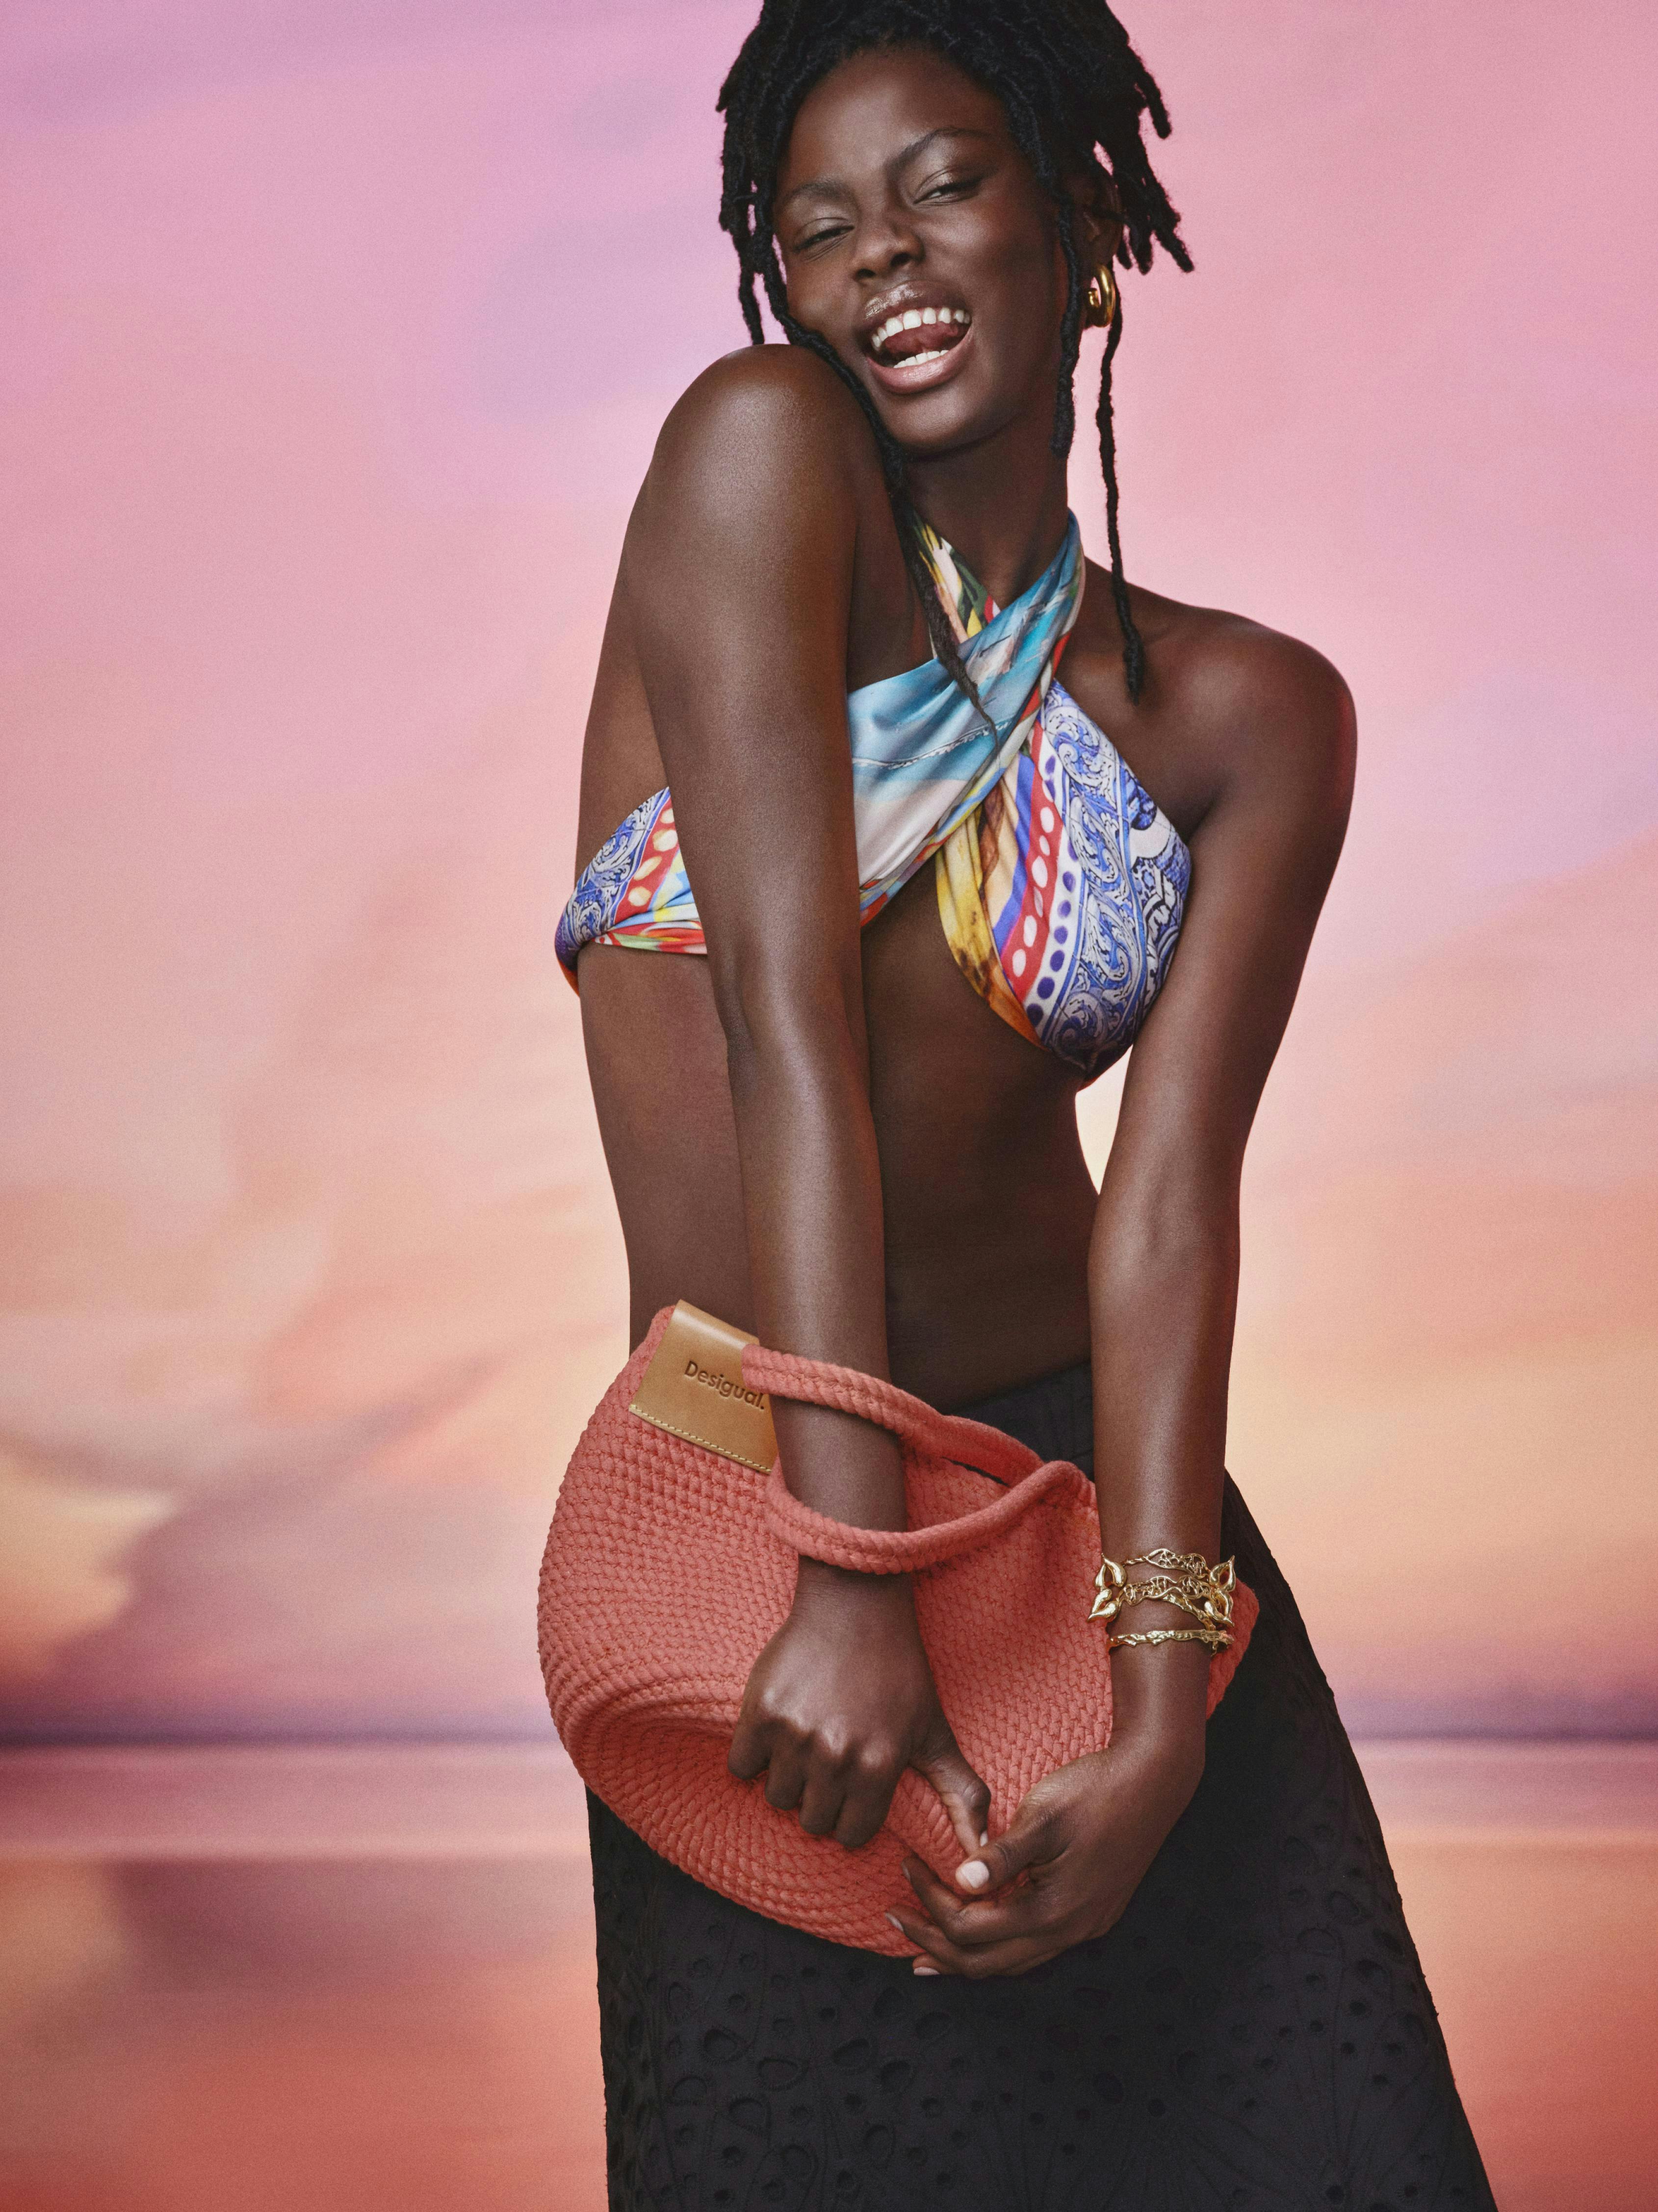 accessories handbag swimwear adult female person woman smile bikini purse